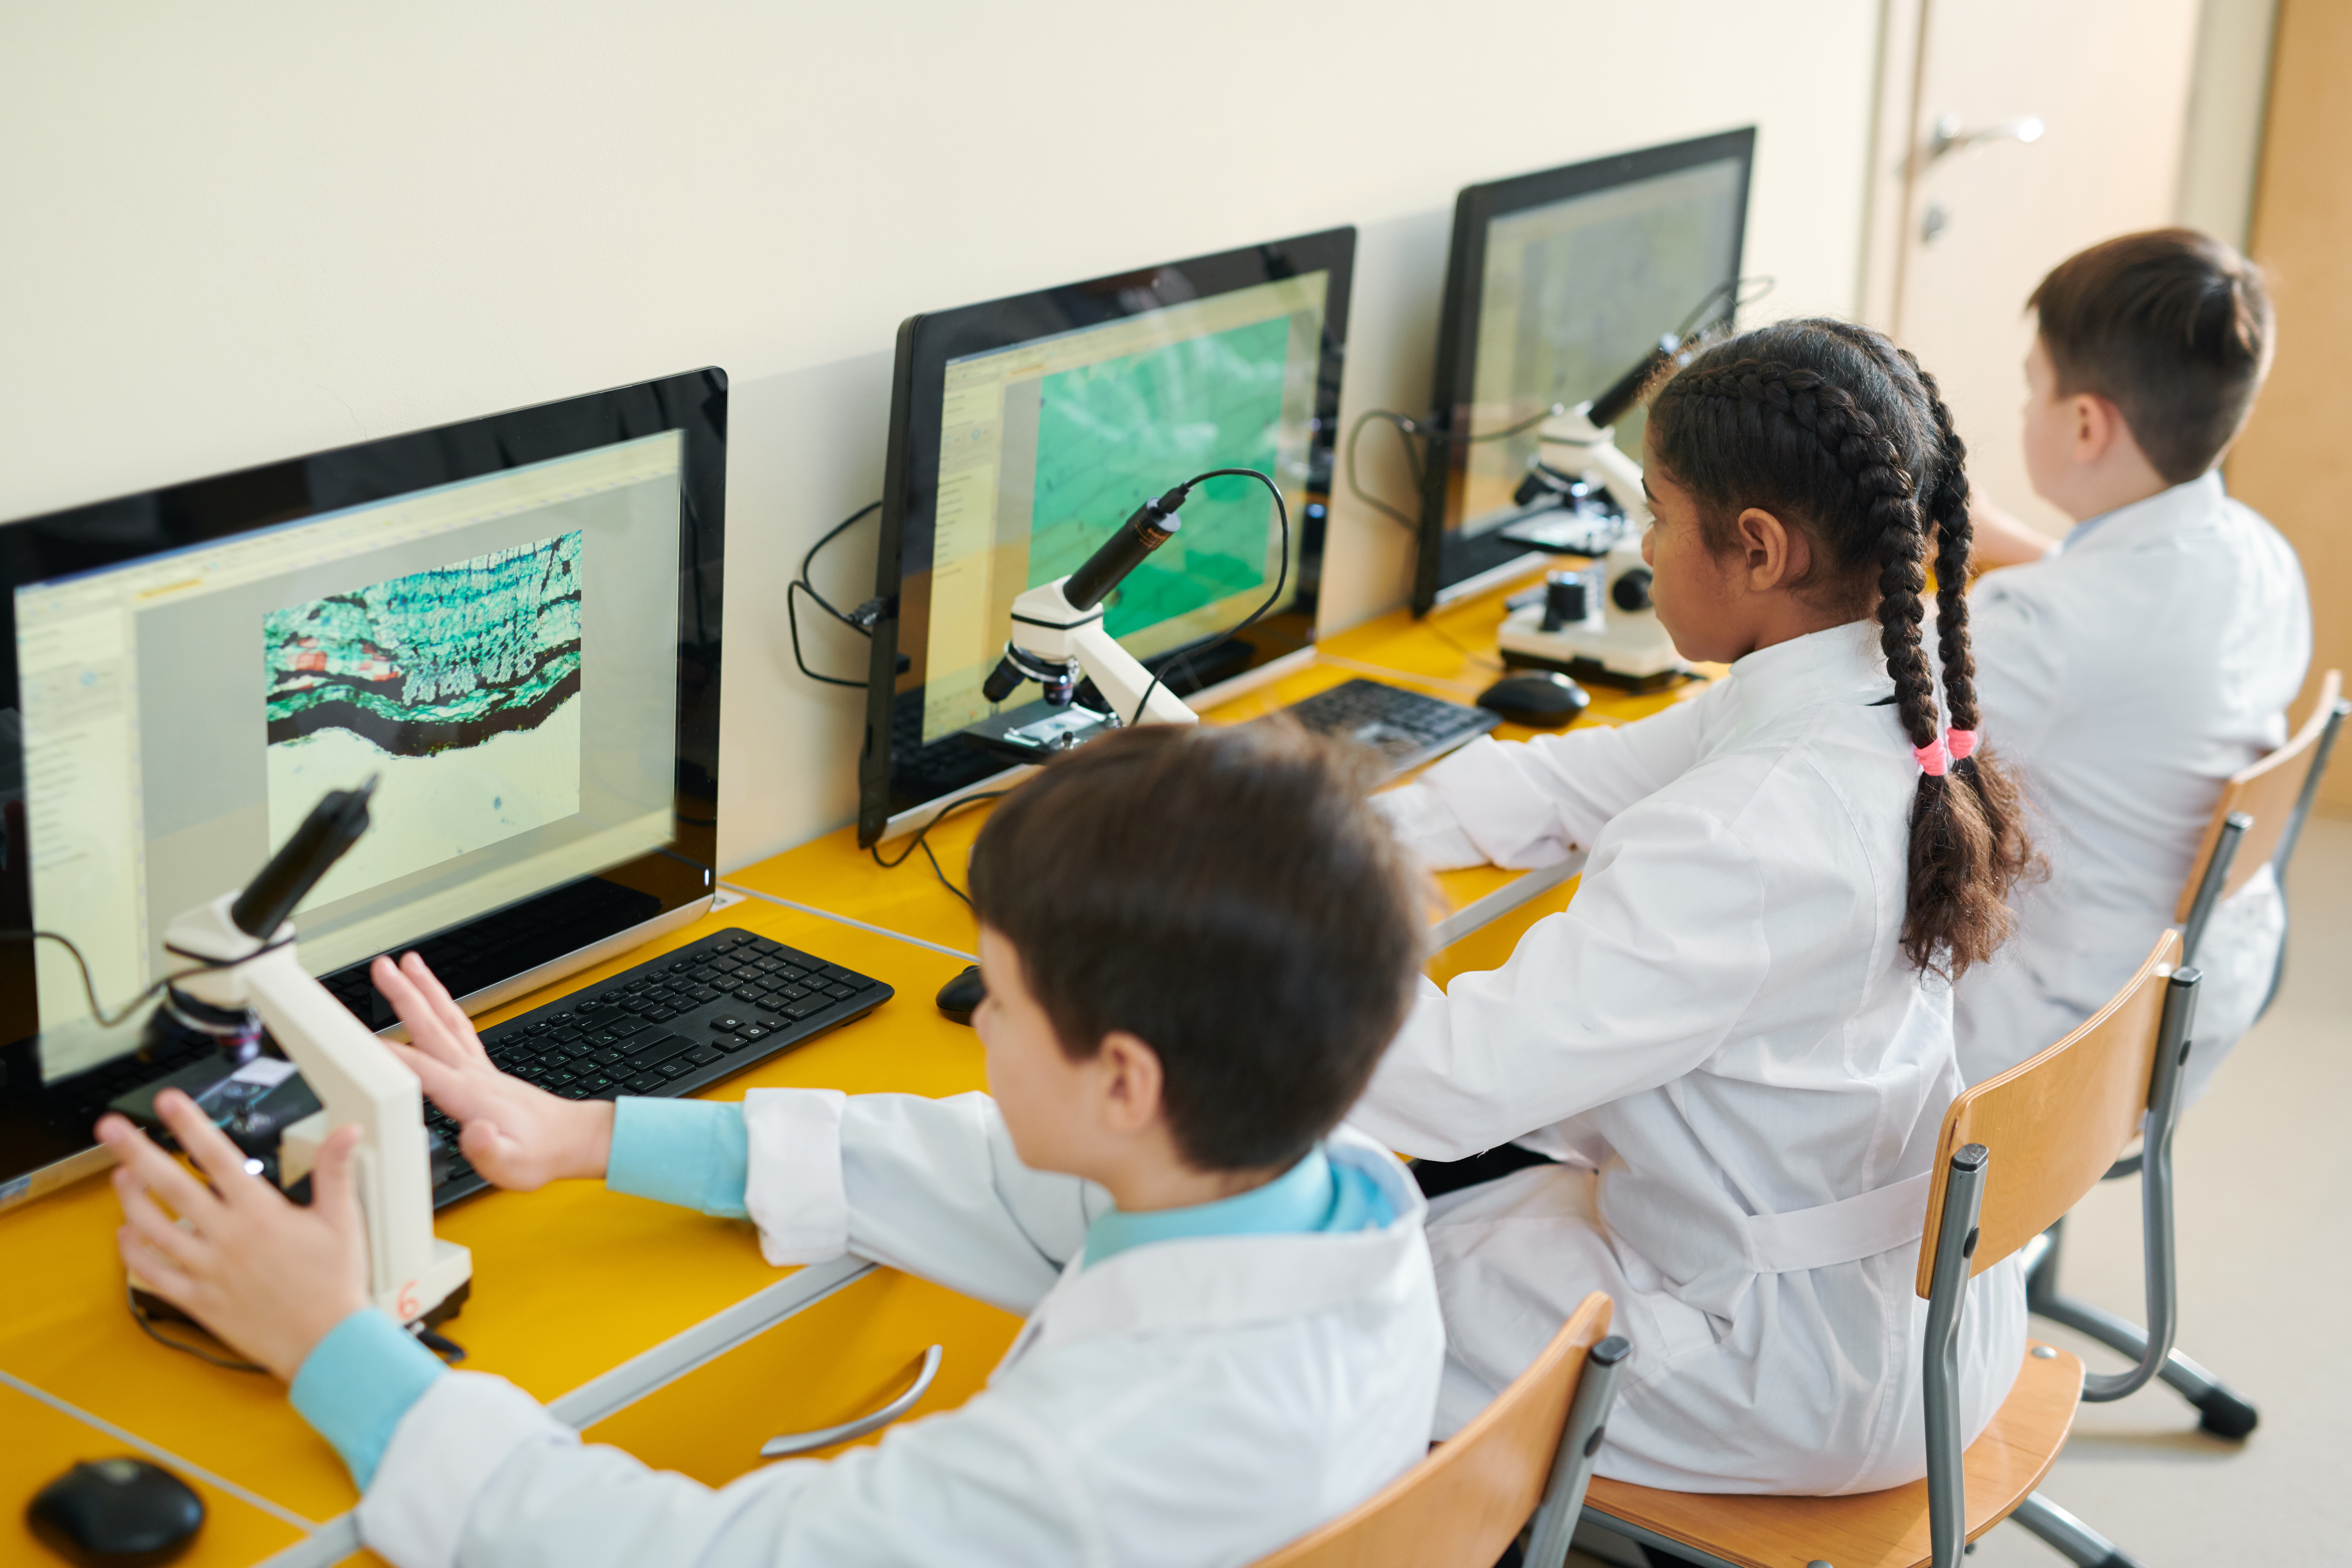 Groupe d'écoliers contemporains assis devant des écrans d'ordinateur et participant à une leçon de science basée sur un jeu.